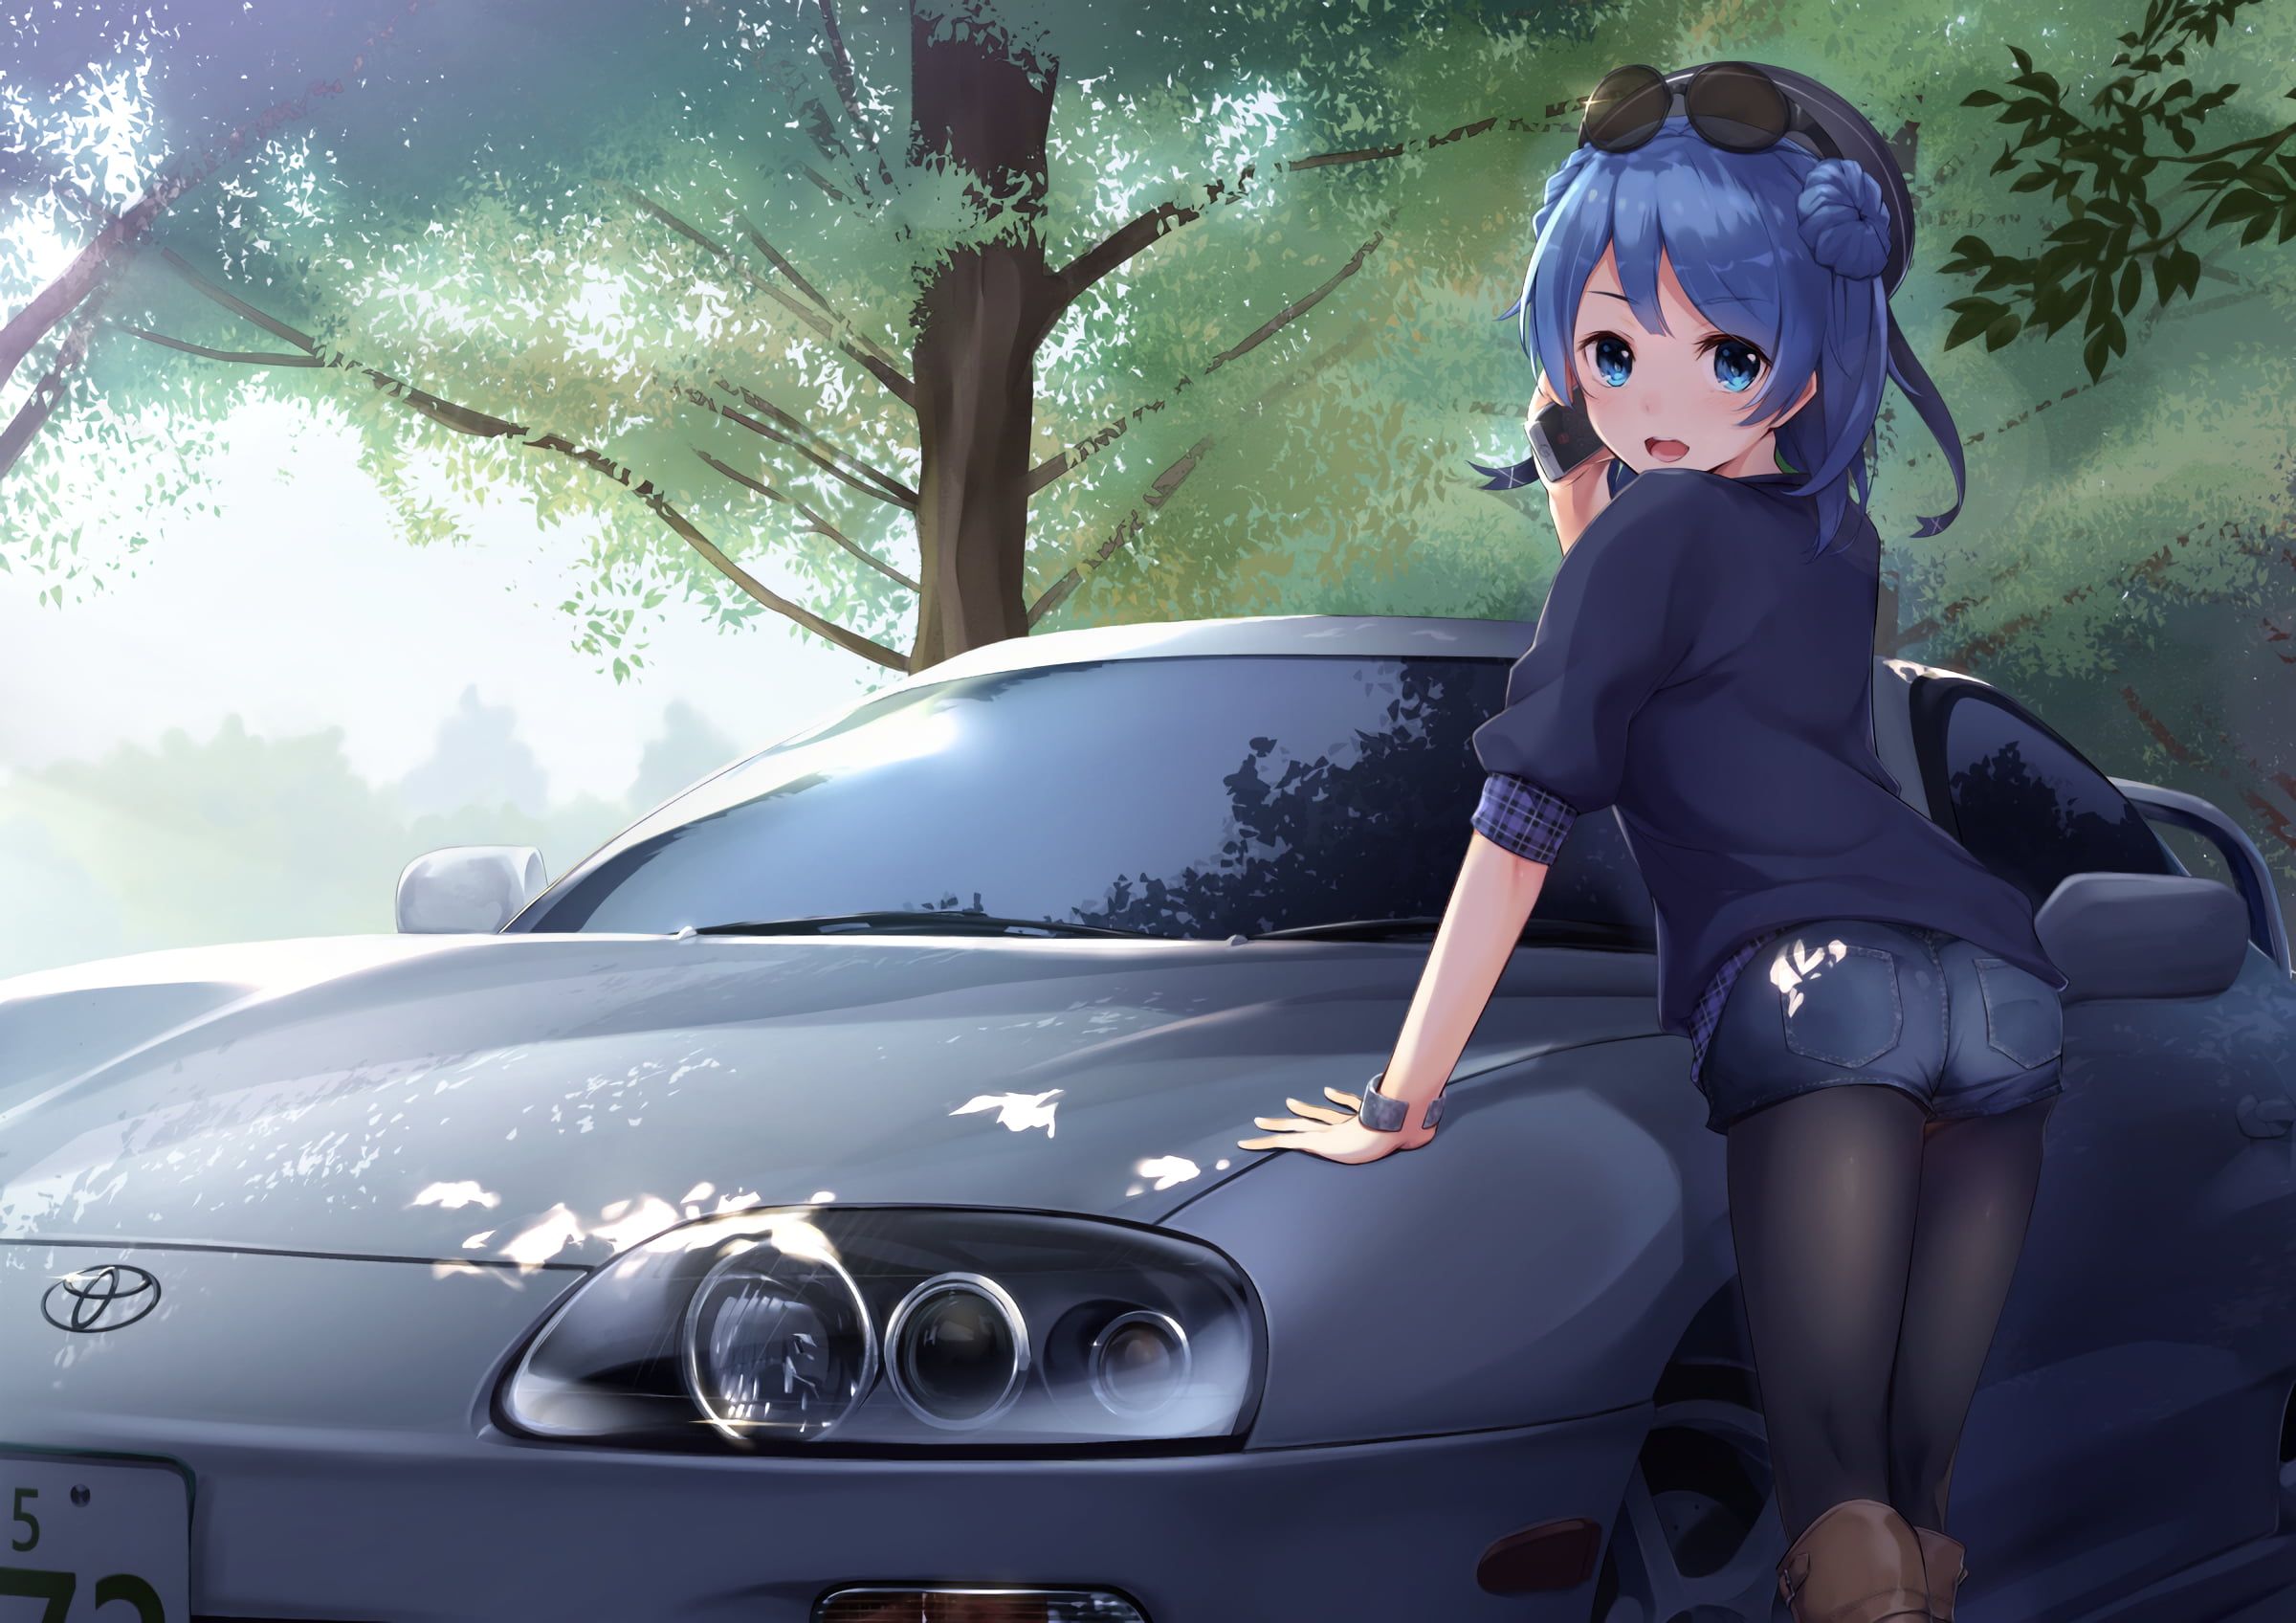 ZeroTwo Anime Car Wraps 07 Made With Top 3MVinyl-10KWRAPS